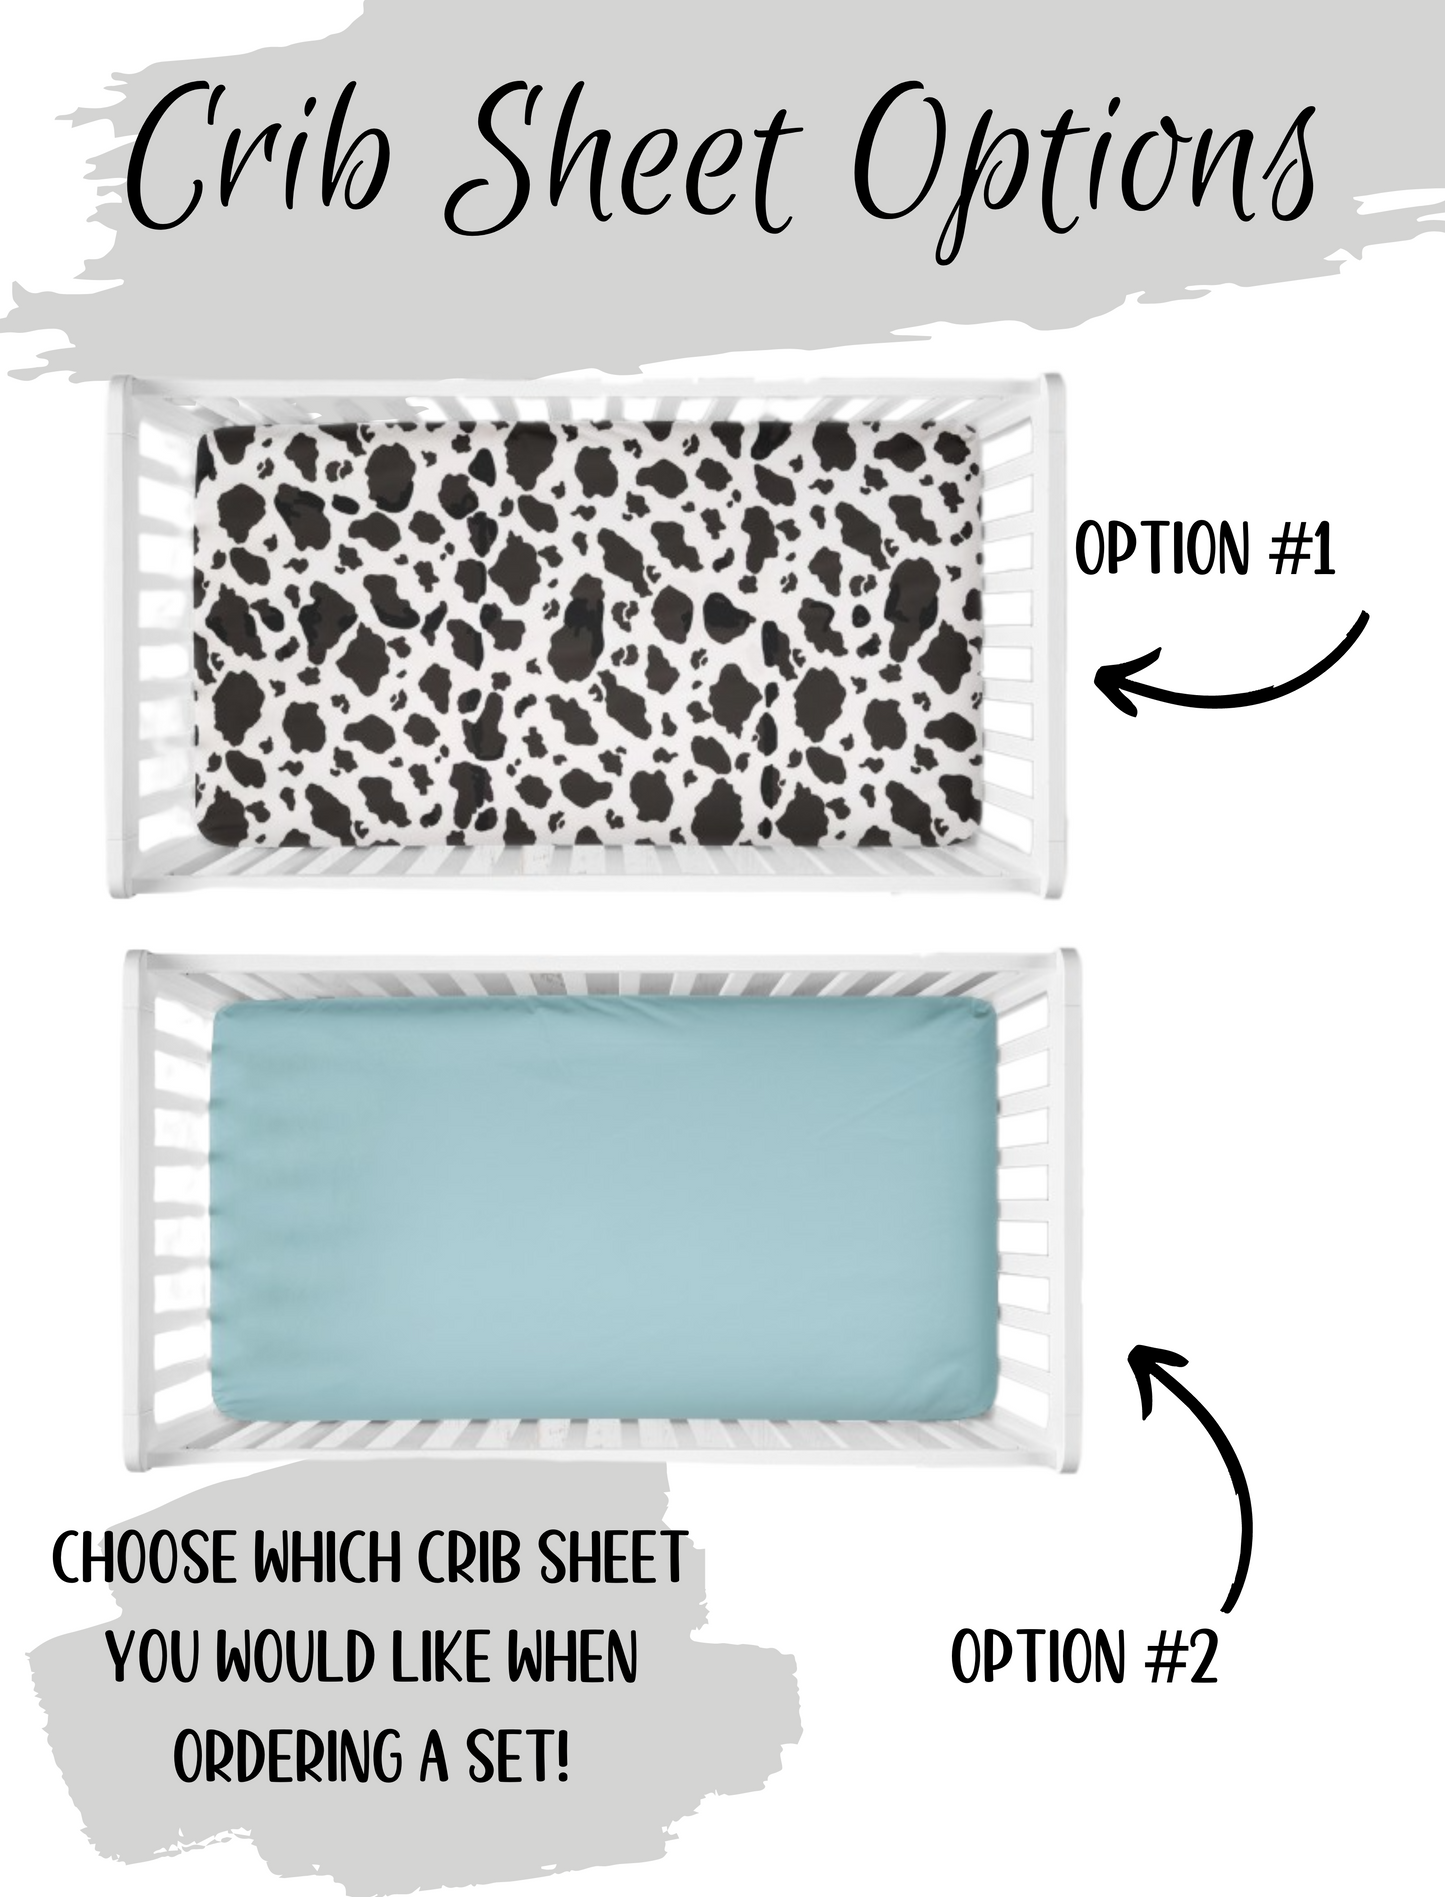 pick your crib sheet - cow print crib sheet  or aqua crib sheet